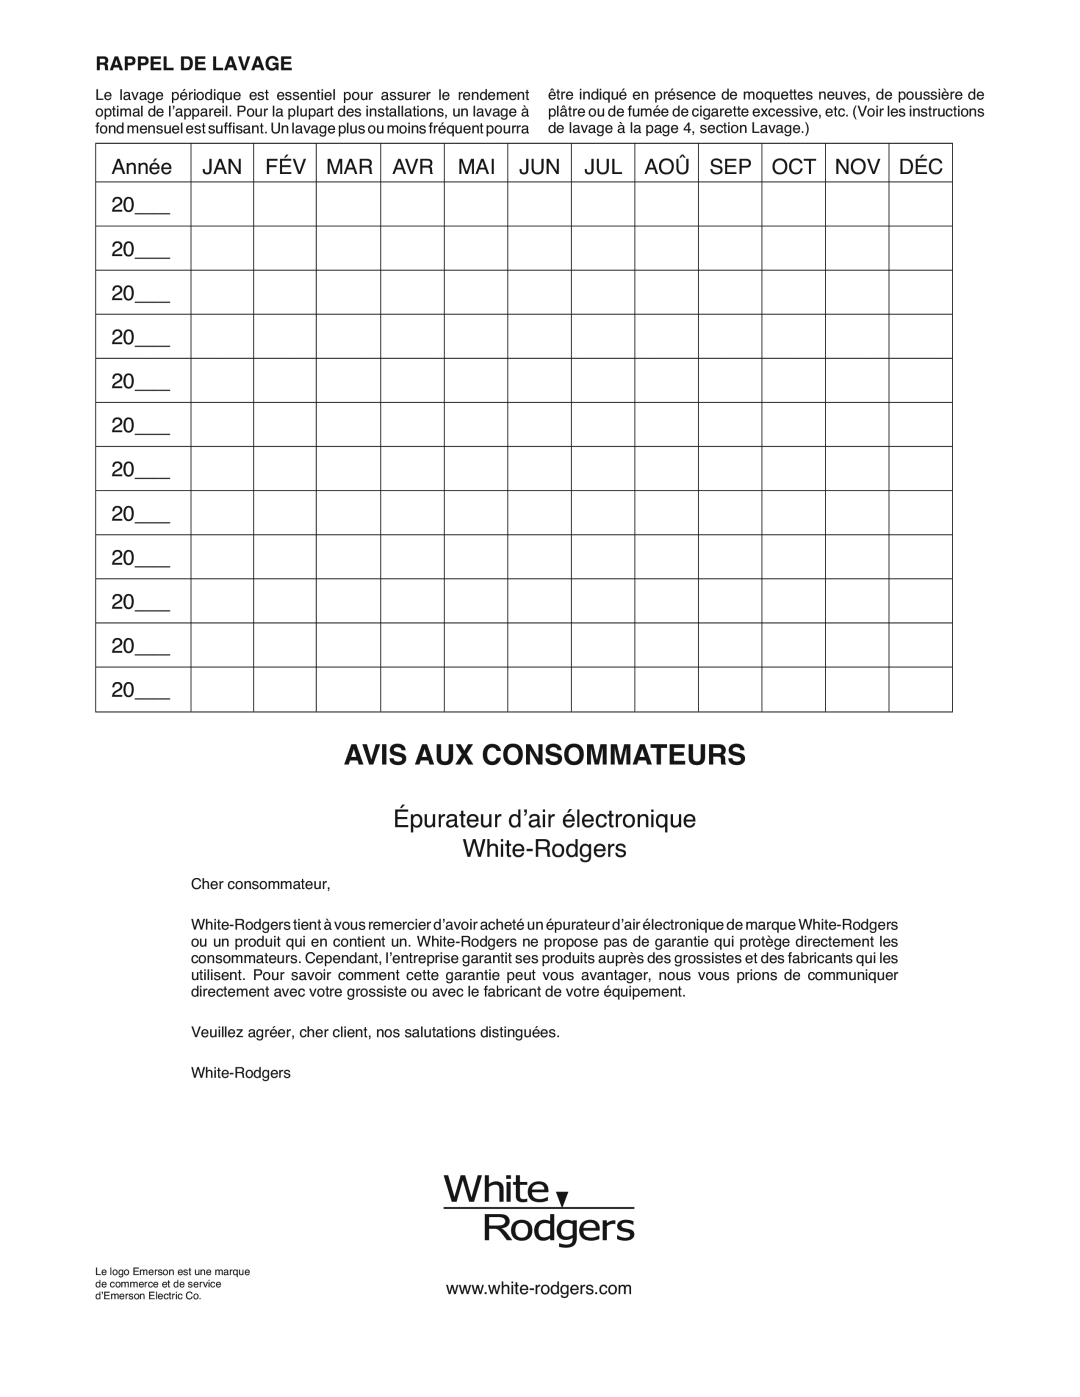 White Rodgers SSC1000 manual Épurateur d’air électronique White-Rodgers, Rappel De Lavage, Avis Aux Consommateurs 